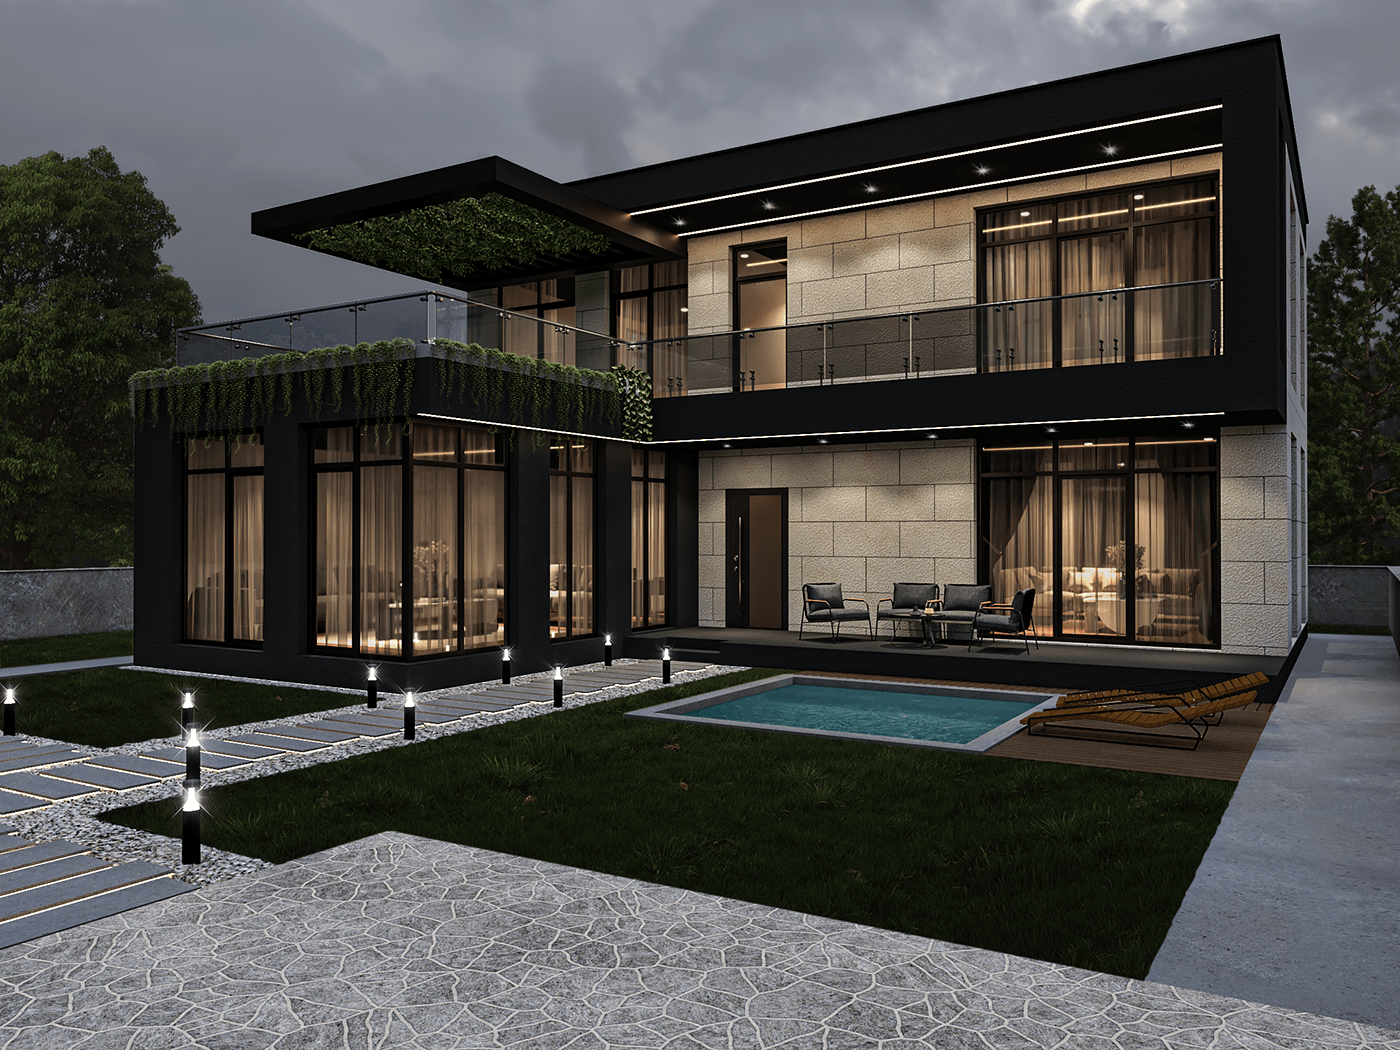 3ds max architecture Dış Mekan Tasarımı exterior exterior design Exterior Home Design house Mimari tasarım Villa Tasarımı